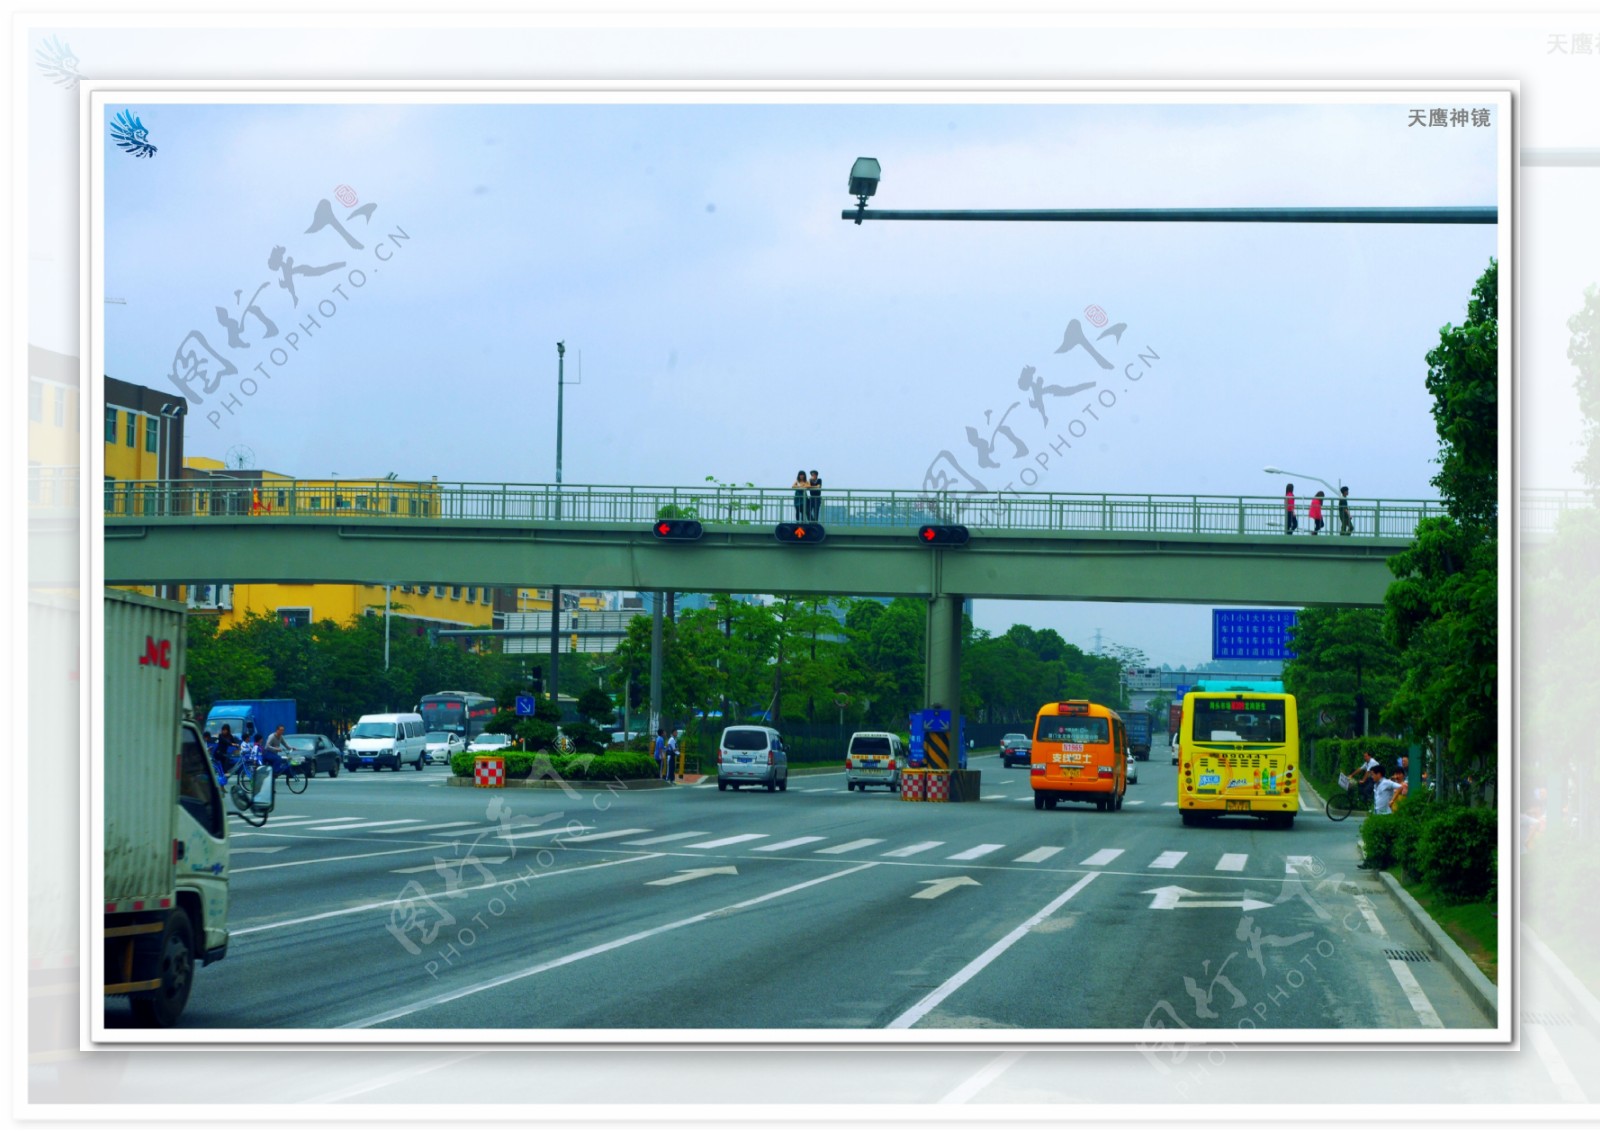 交通建设沿路风景图片